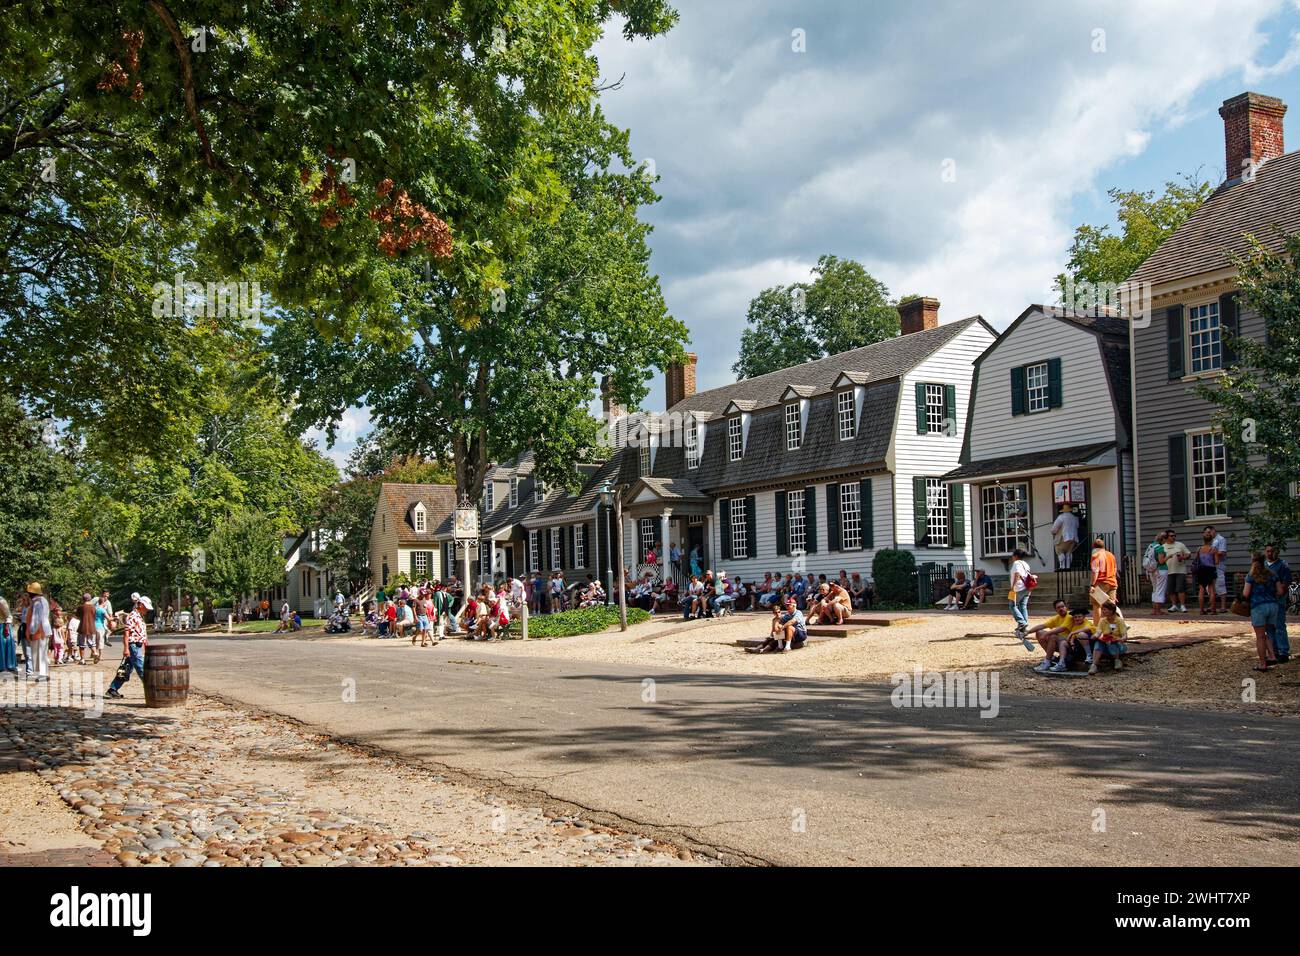 scène de rue, bâtiments coloniaux, gens, touristes en attente, foule, événement, défilé, été, Colonial Williamsburg ; Virginie; Williamsburg ; va Banque D'Images